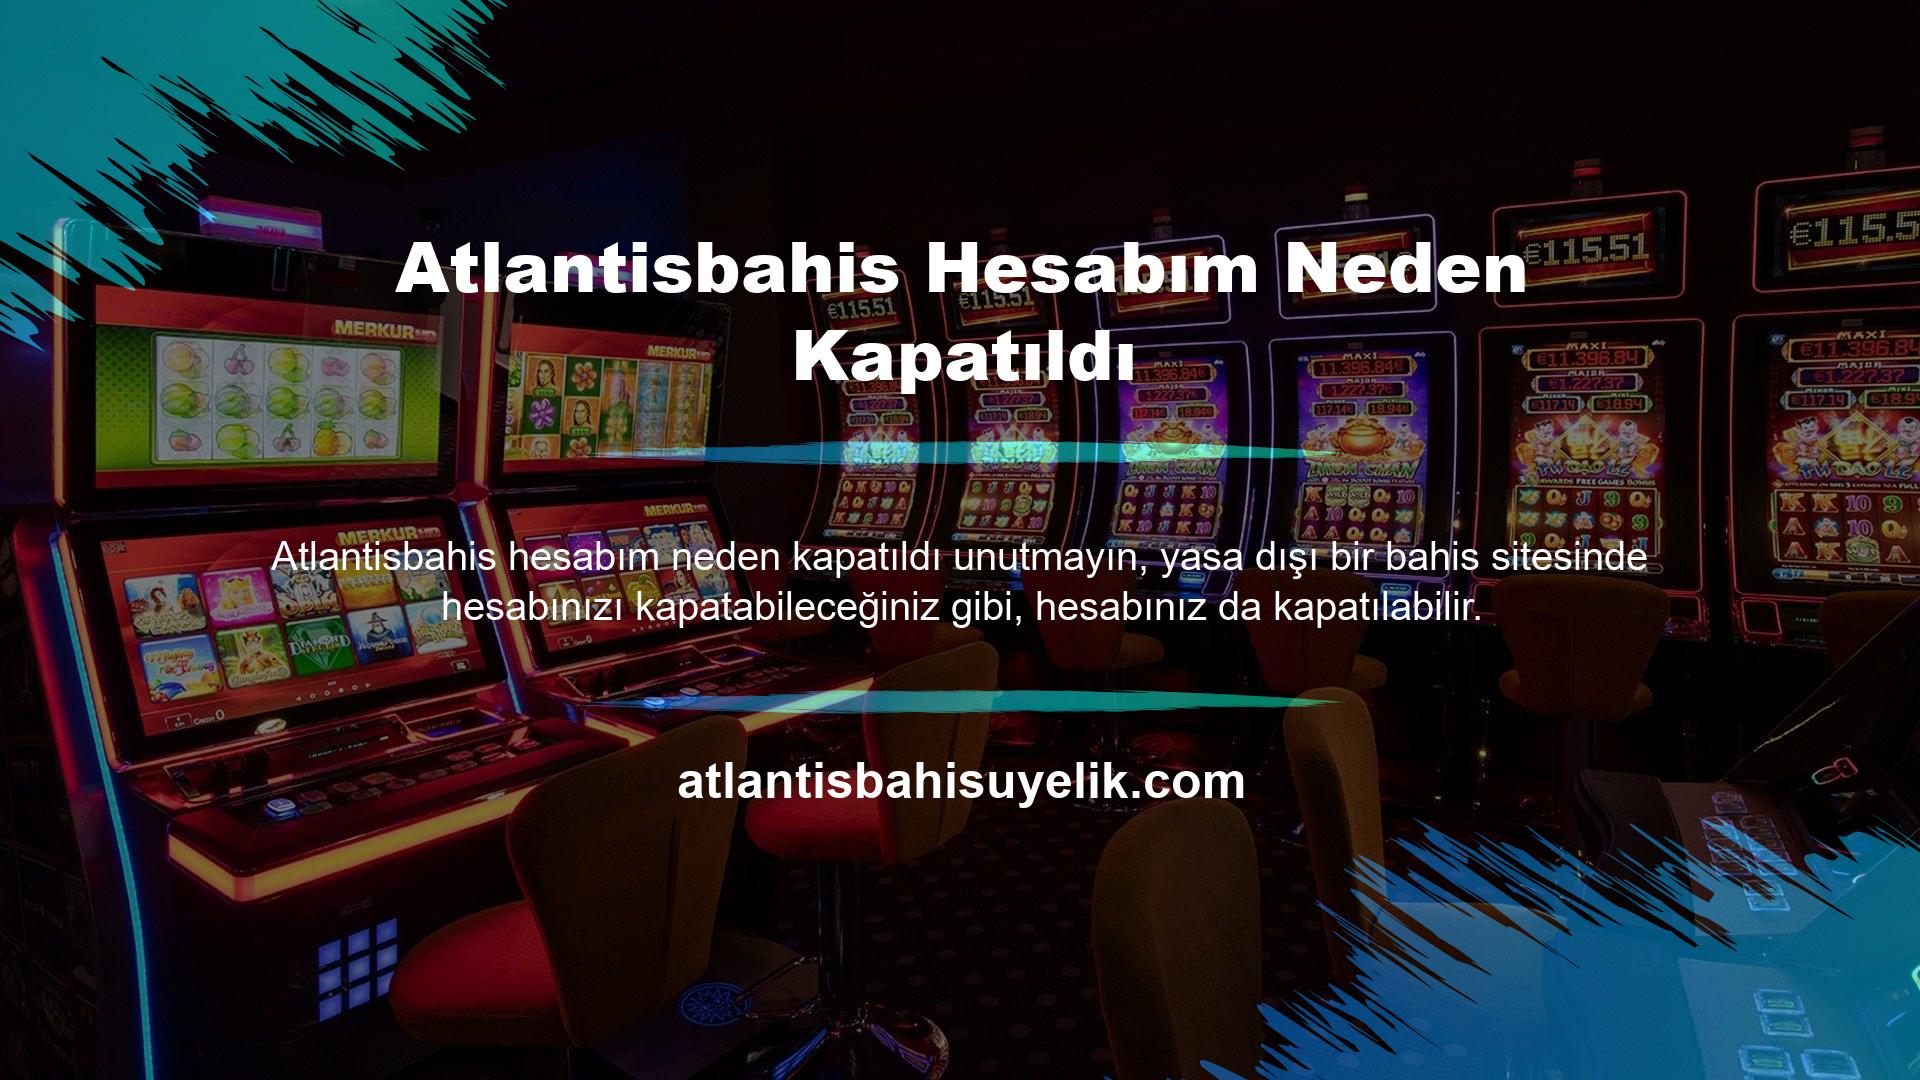 Atlantisbahis web sitesinin hesabınızı kapatma nedenleri şunlardır: Biliyorsunuz Atlantisbahis üyelik programında bazı bilgiler sunuyoruz